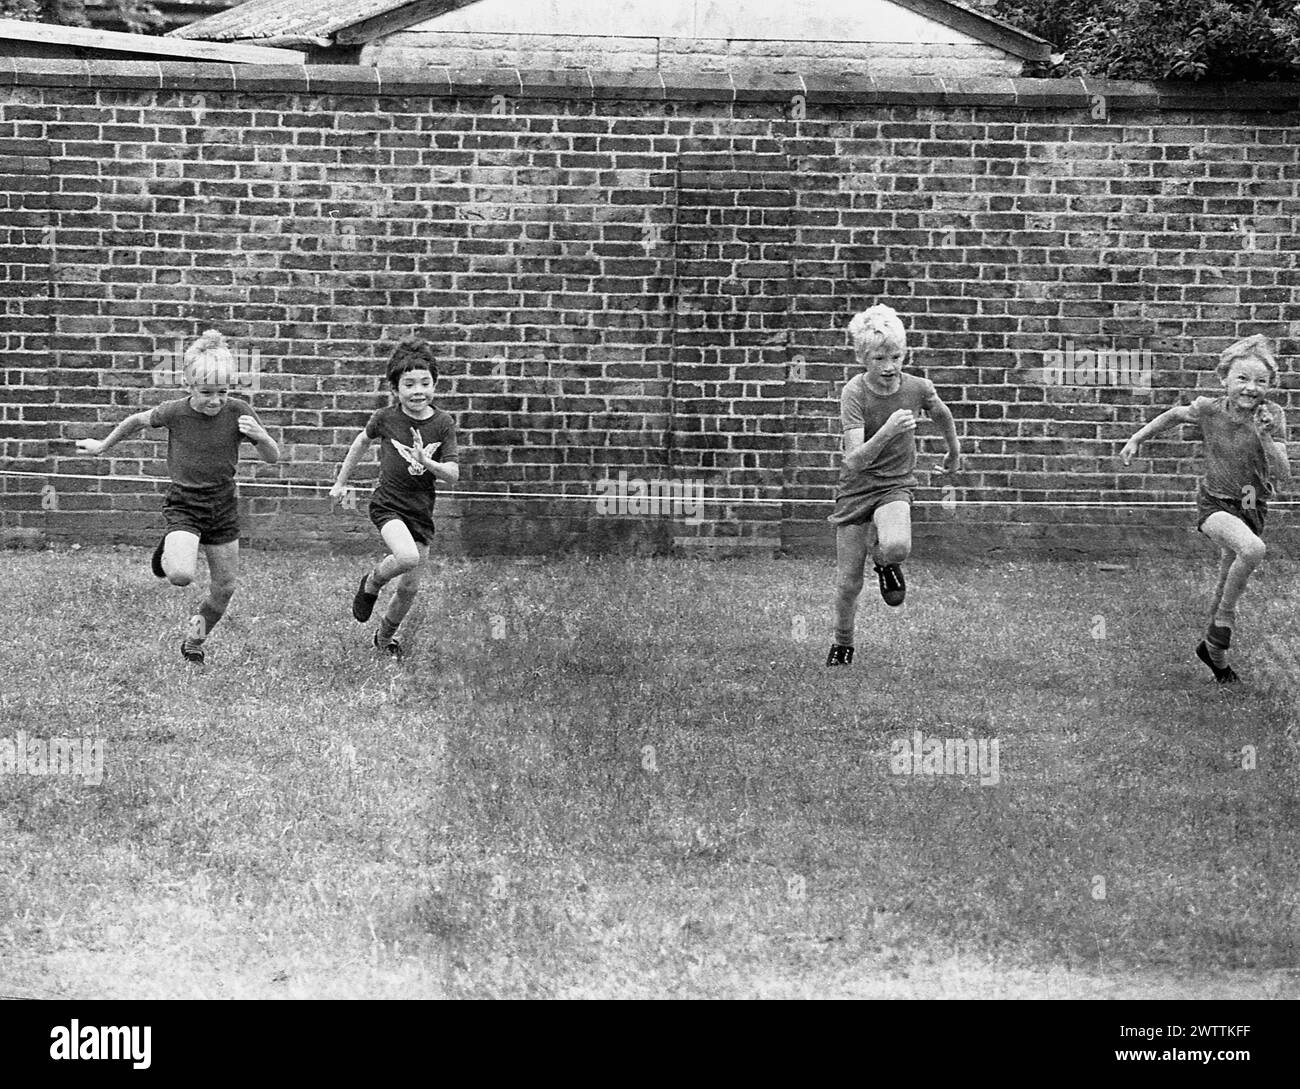 Années 1960, historique, quatre écoliers du primaire prenant part à une course de sprint sur herbe dans un champ clos, Angleterre, Royaume-Uni. Banque D'Images